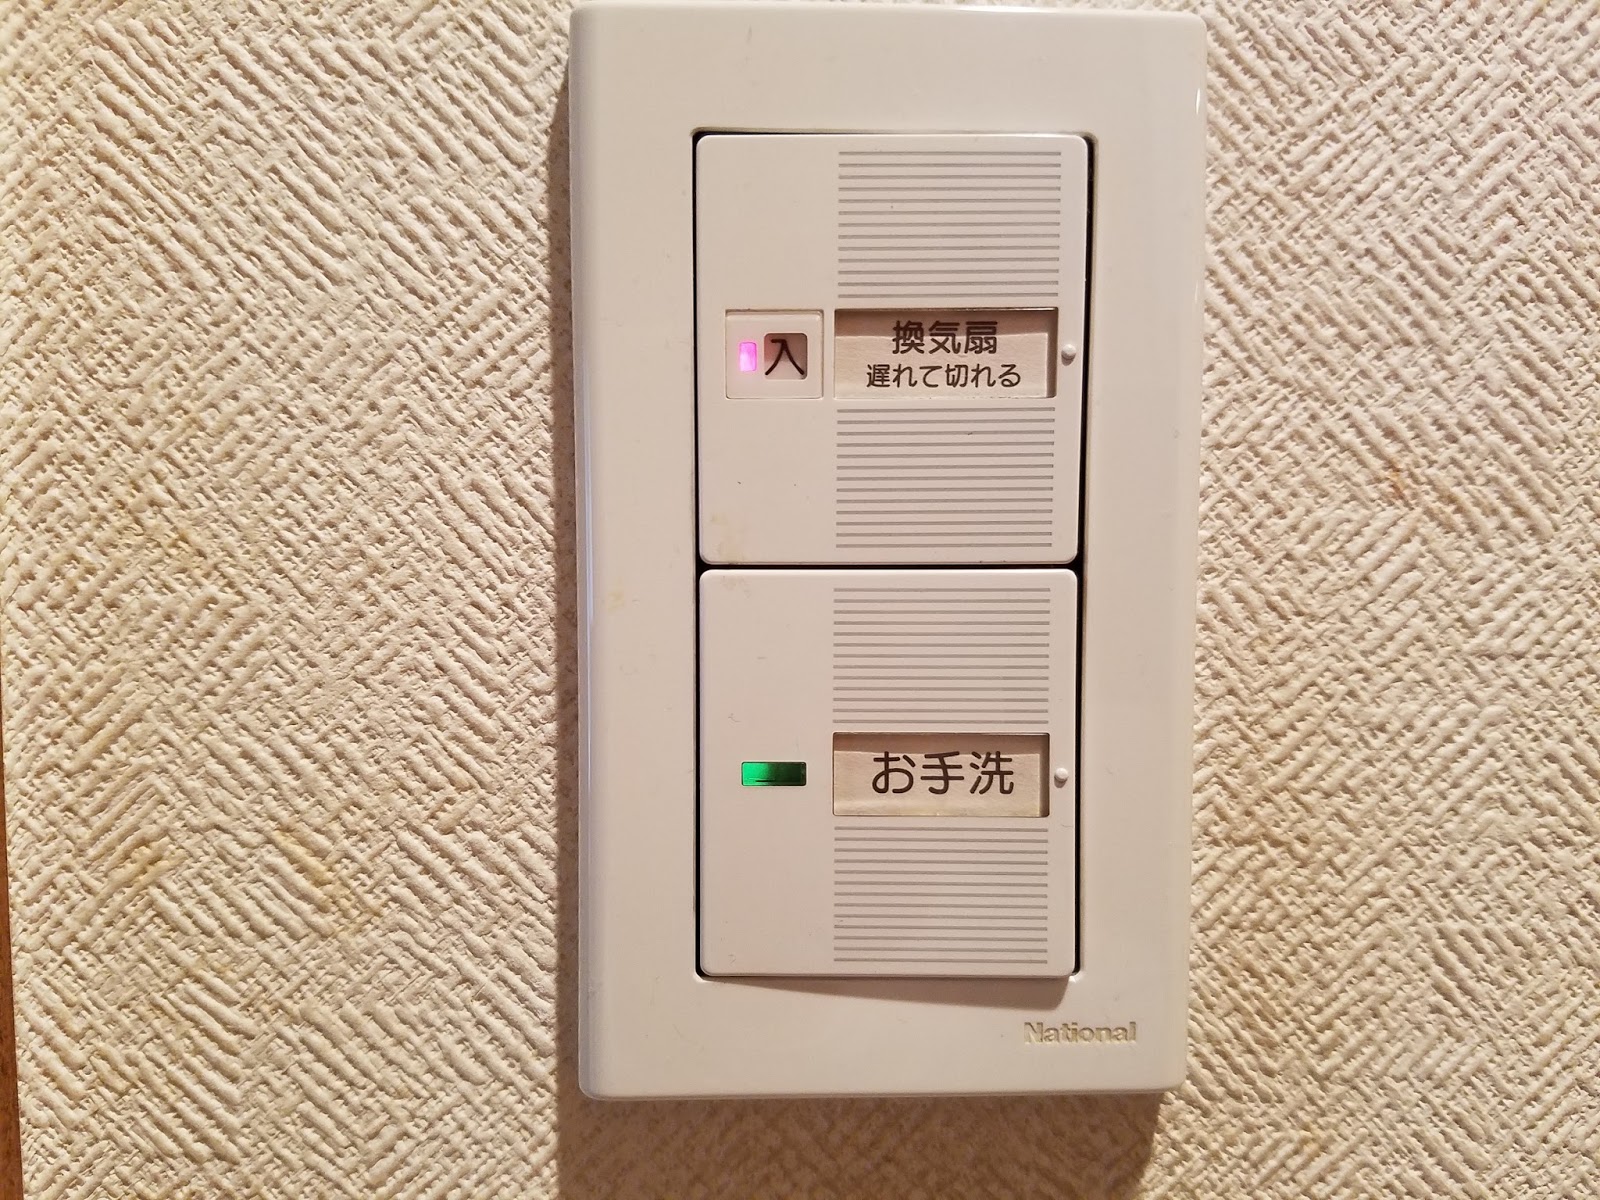 けいじのがらくた話 トイレの照明スイッチがバカに、業者の修理見積りでは1万円、スイッチ部品の購入でバネを交換することに